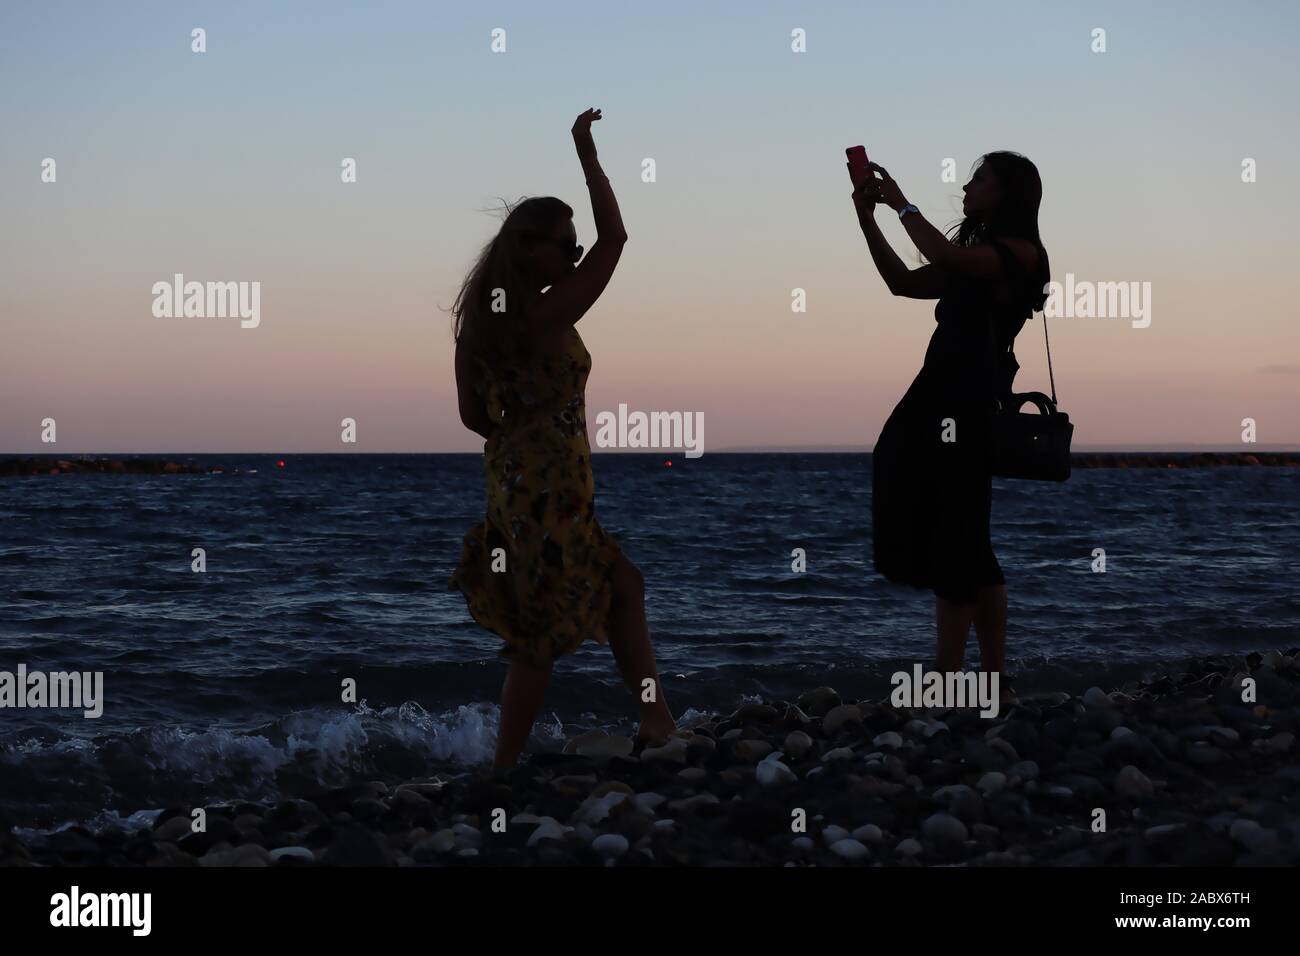 Zwei Junge Mädchen Aus Ost Europa Am Strand Silhouetted Aufnehmen Von